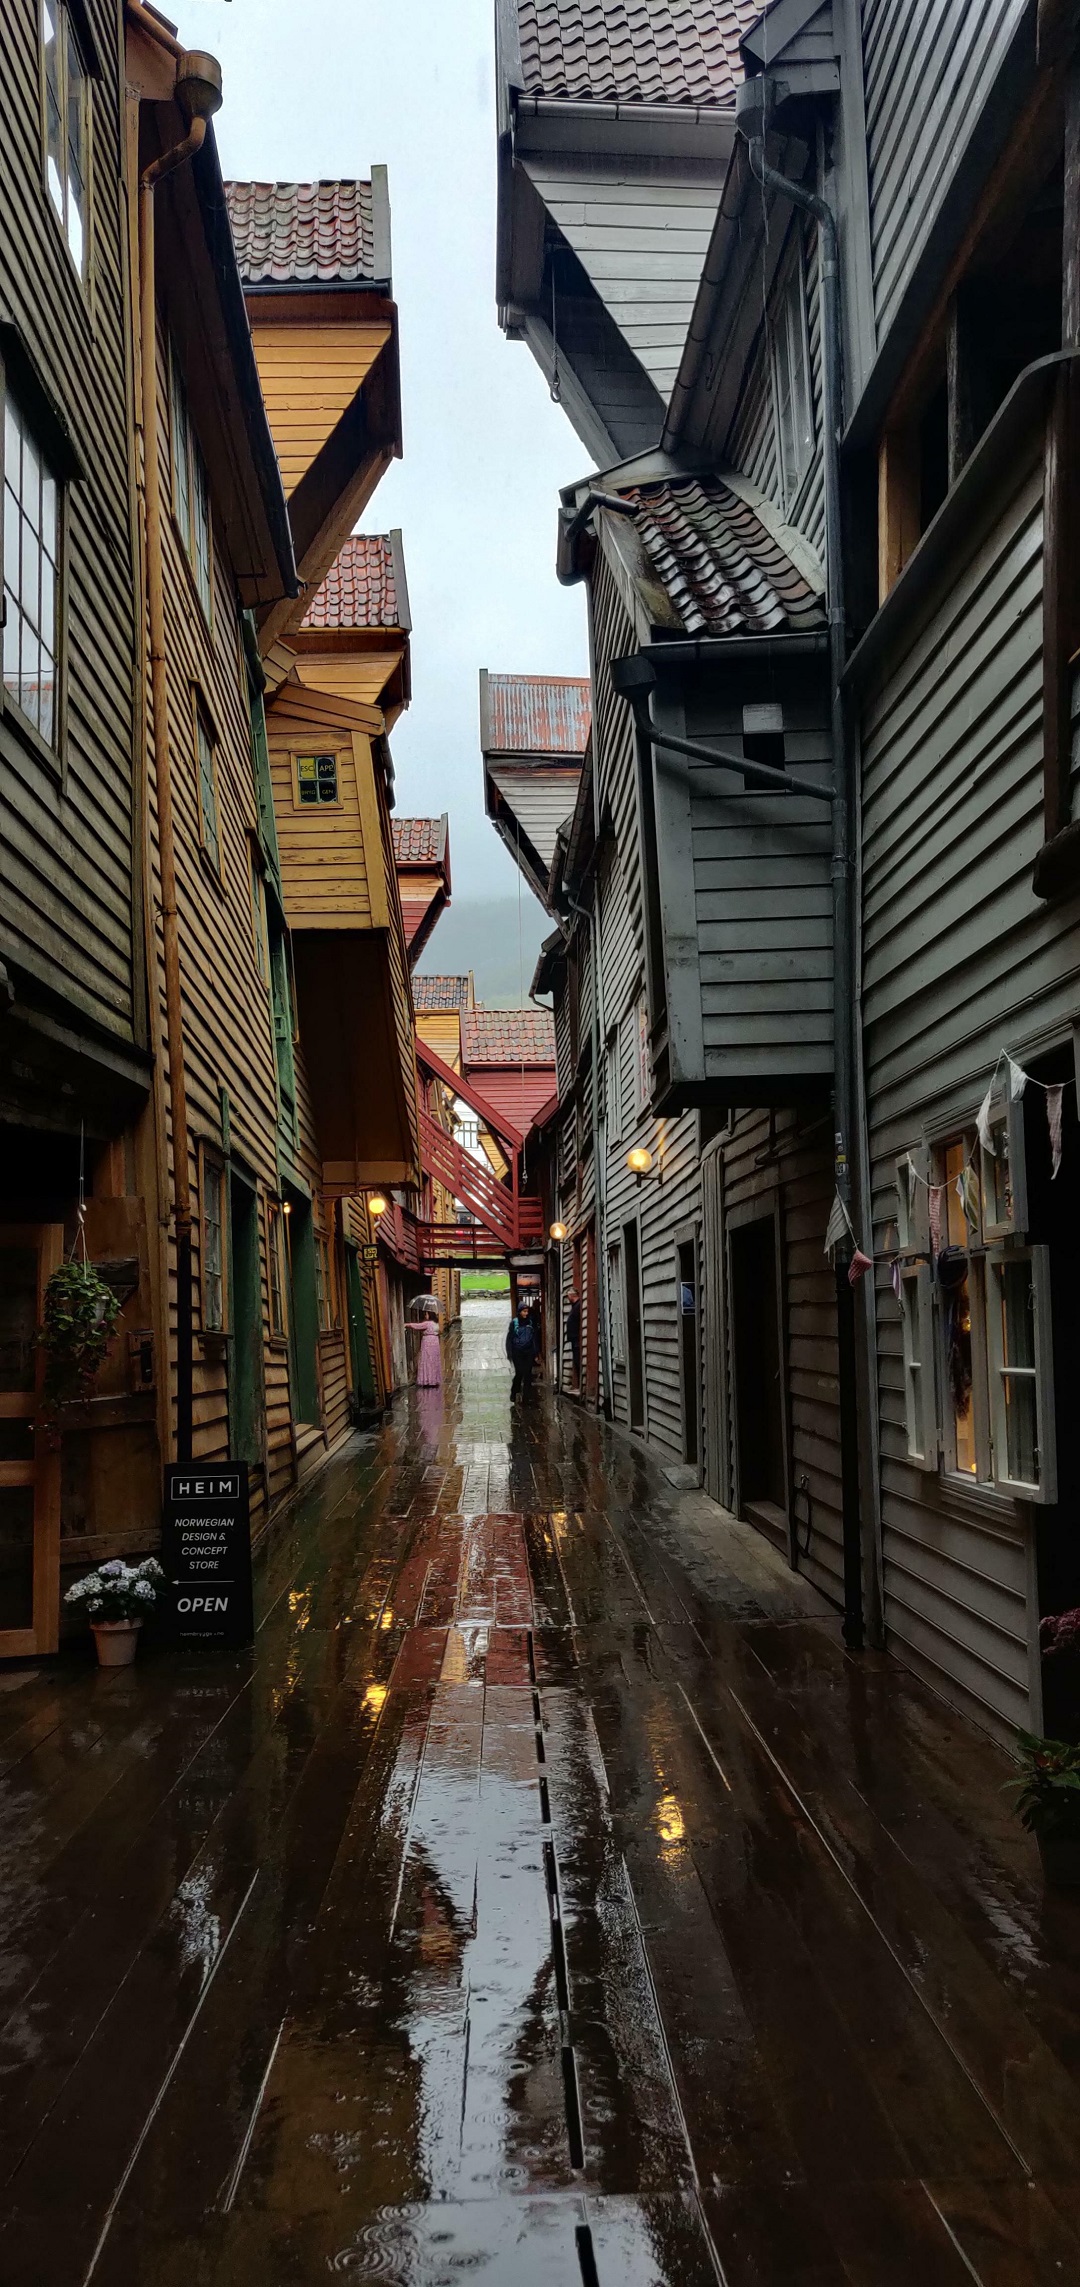 Wooden Houses In Bergen, Norway